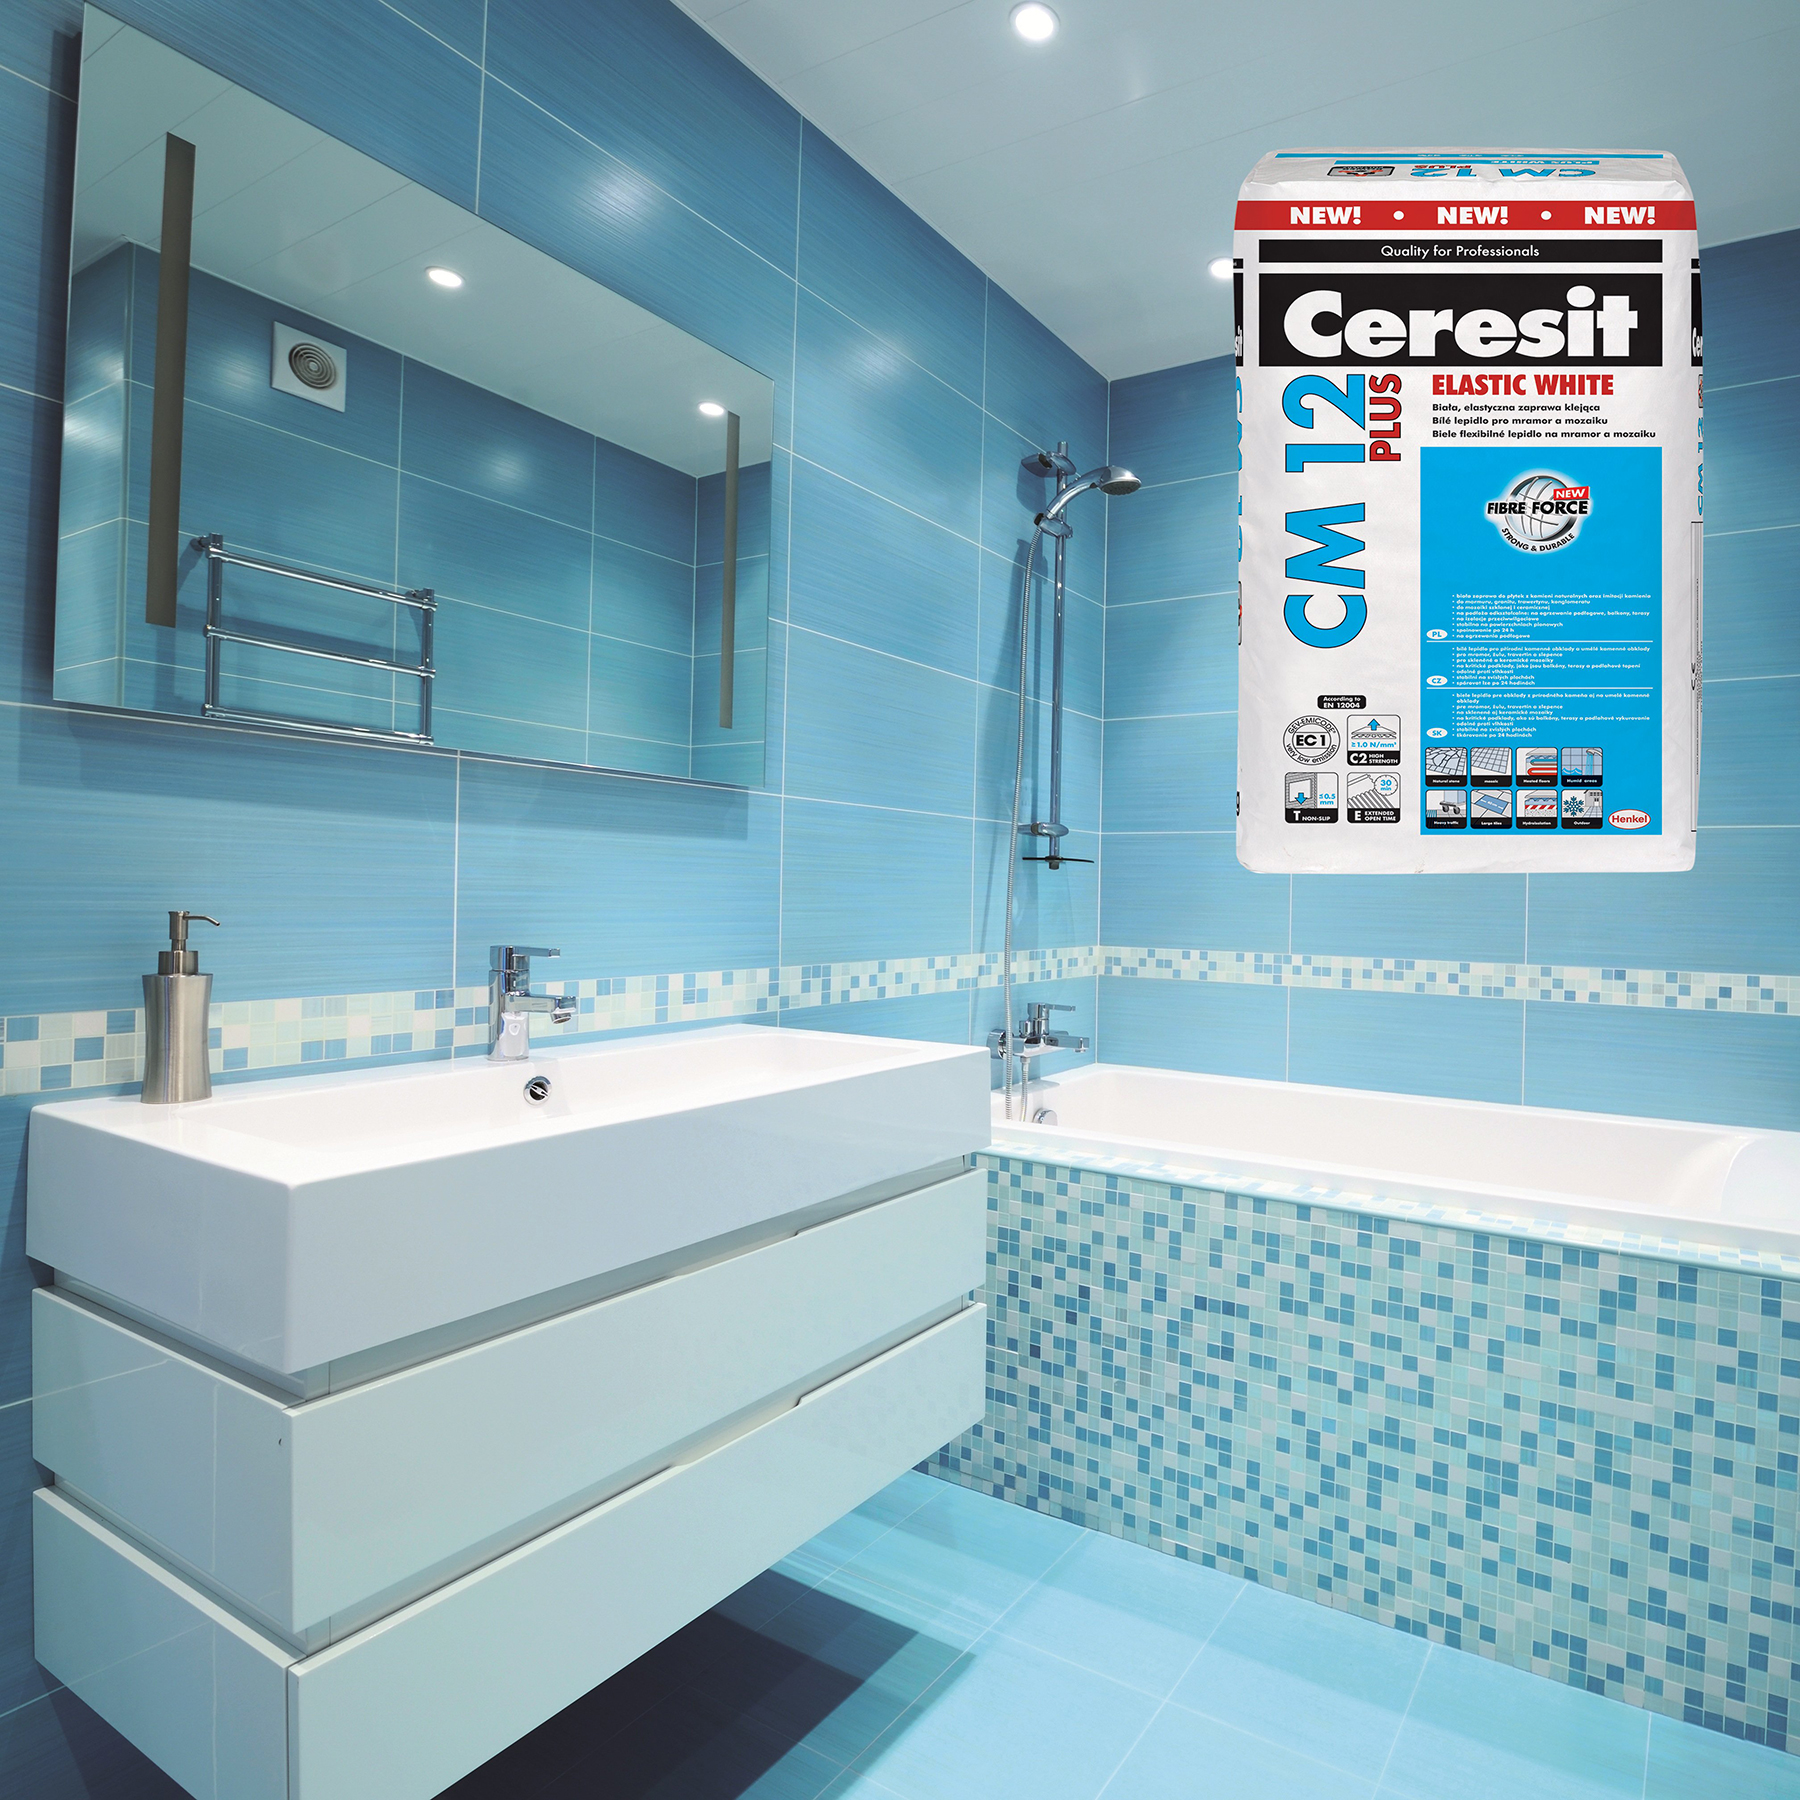 Ceresit image photo bathroom with Ceresit CM 12 Plus Elastic White